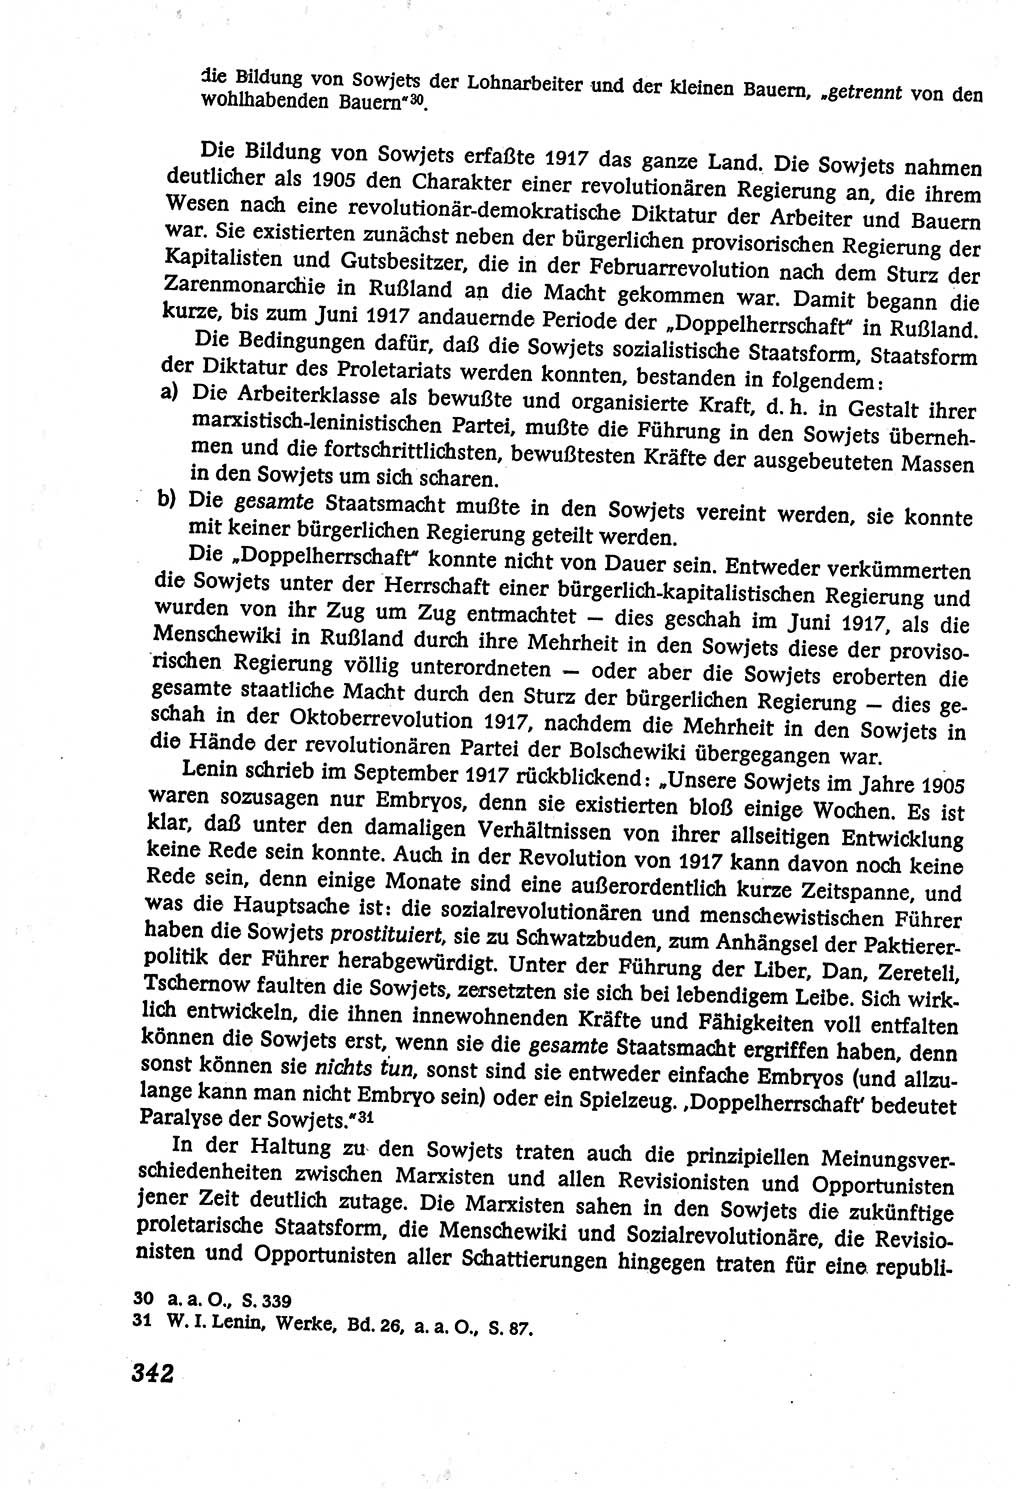 Marxistisch-leninistische (ML) Staats- und Rechtstheorie [Deutsche Demokratische Republik (DDR)], Lehrbuch 1980, Seite 342 (ML St.-R.-Th. DDR Lb. 1980, S. 342)